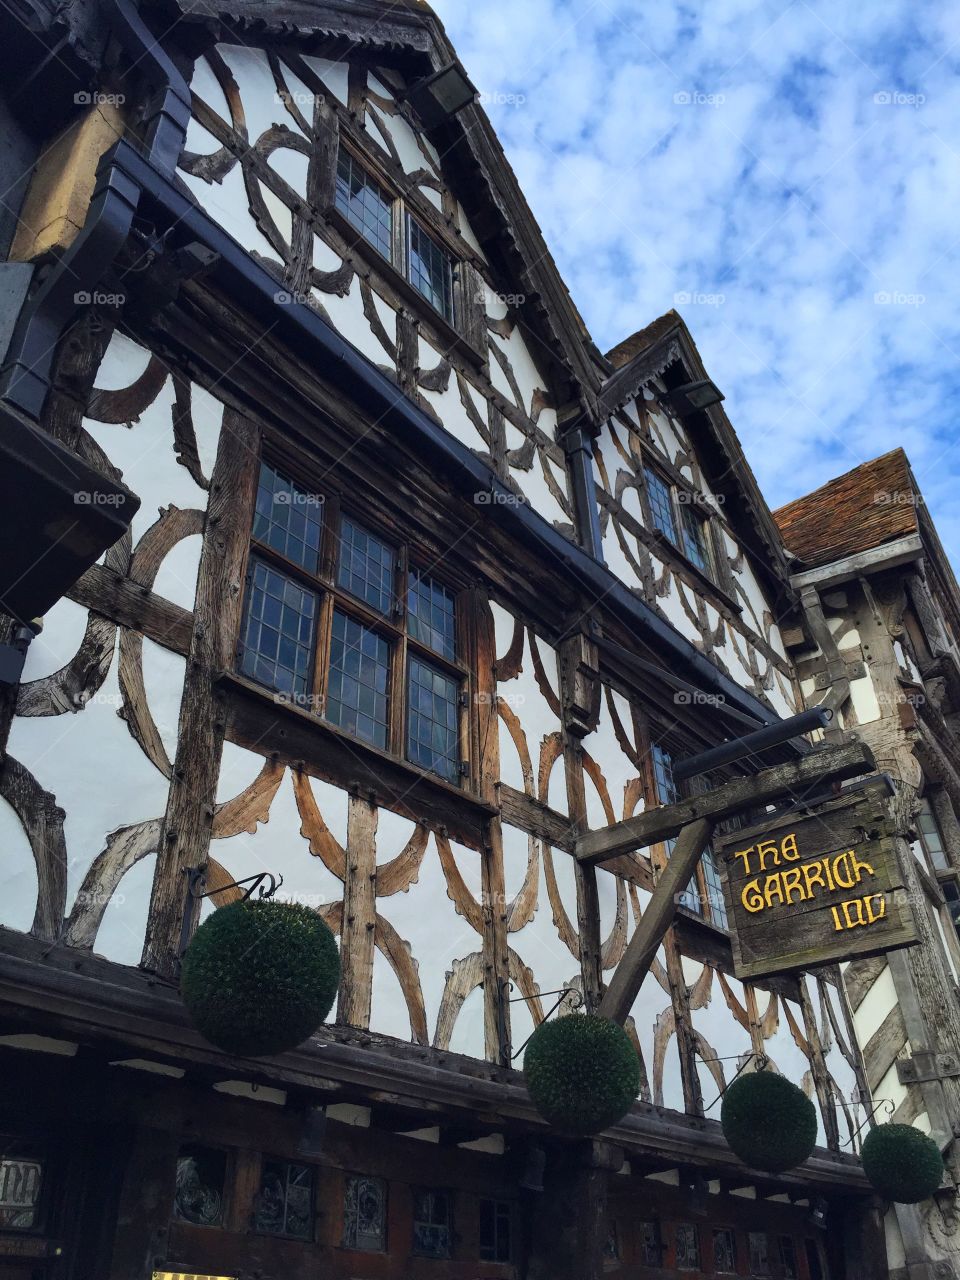 Shakespeare's pub